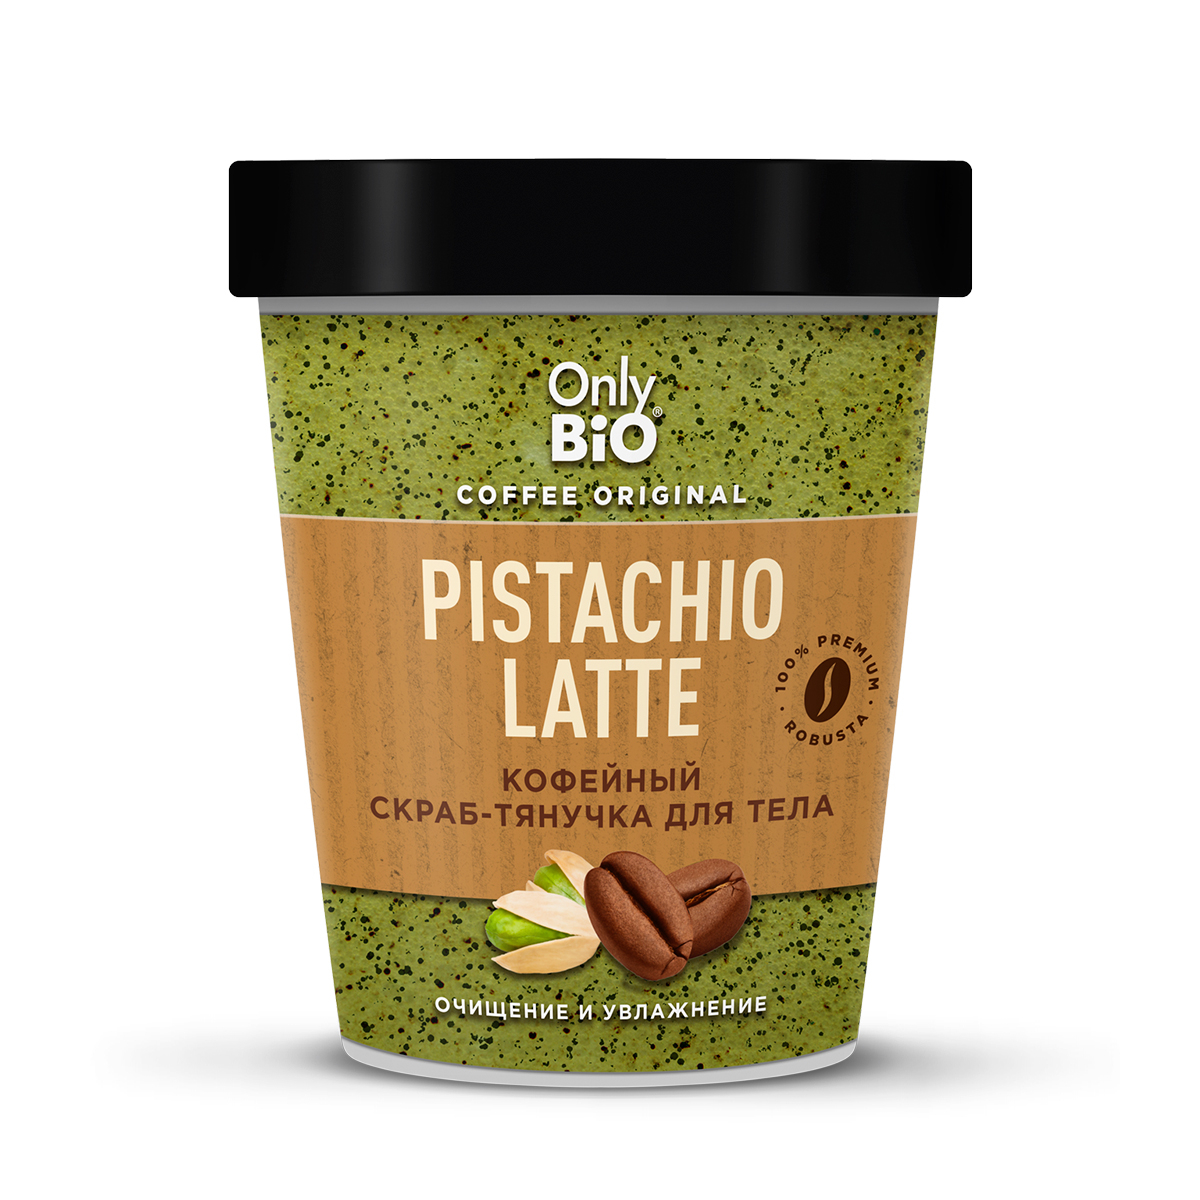 Скраб-тянучка для тела Only Bio Coffee Original Pistachio Latte кофейный, 230 мл скраб тянучка для тела kopusha семь пятниц 250г